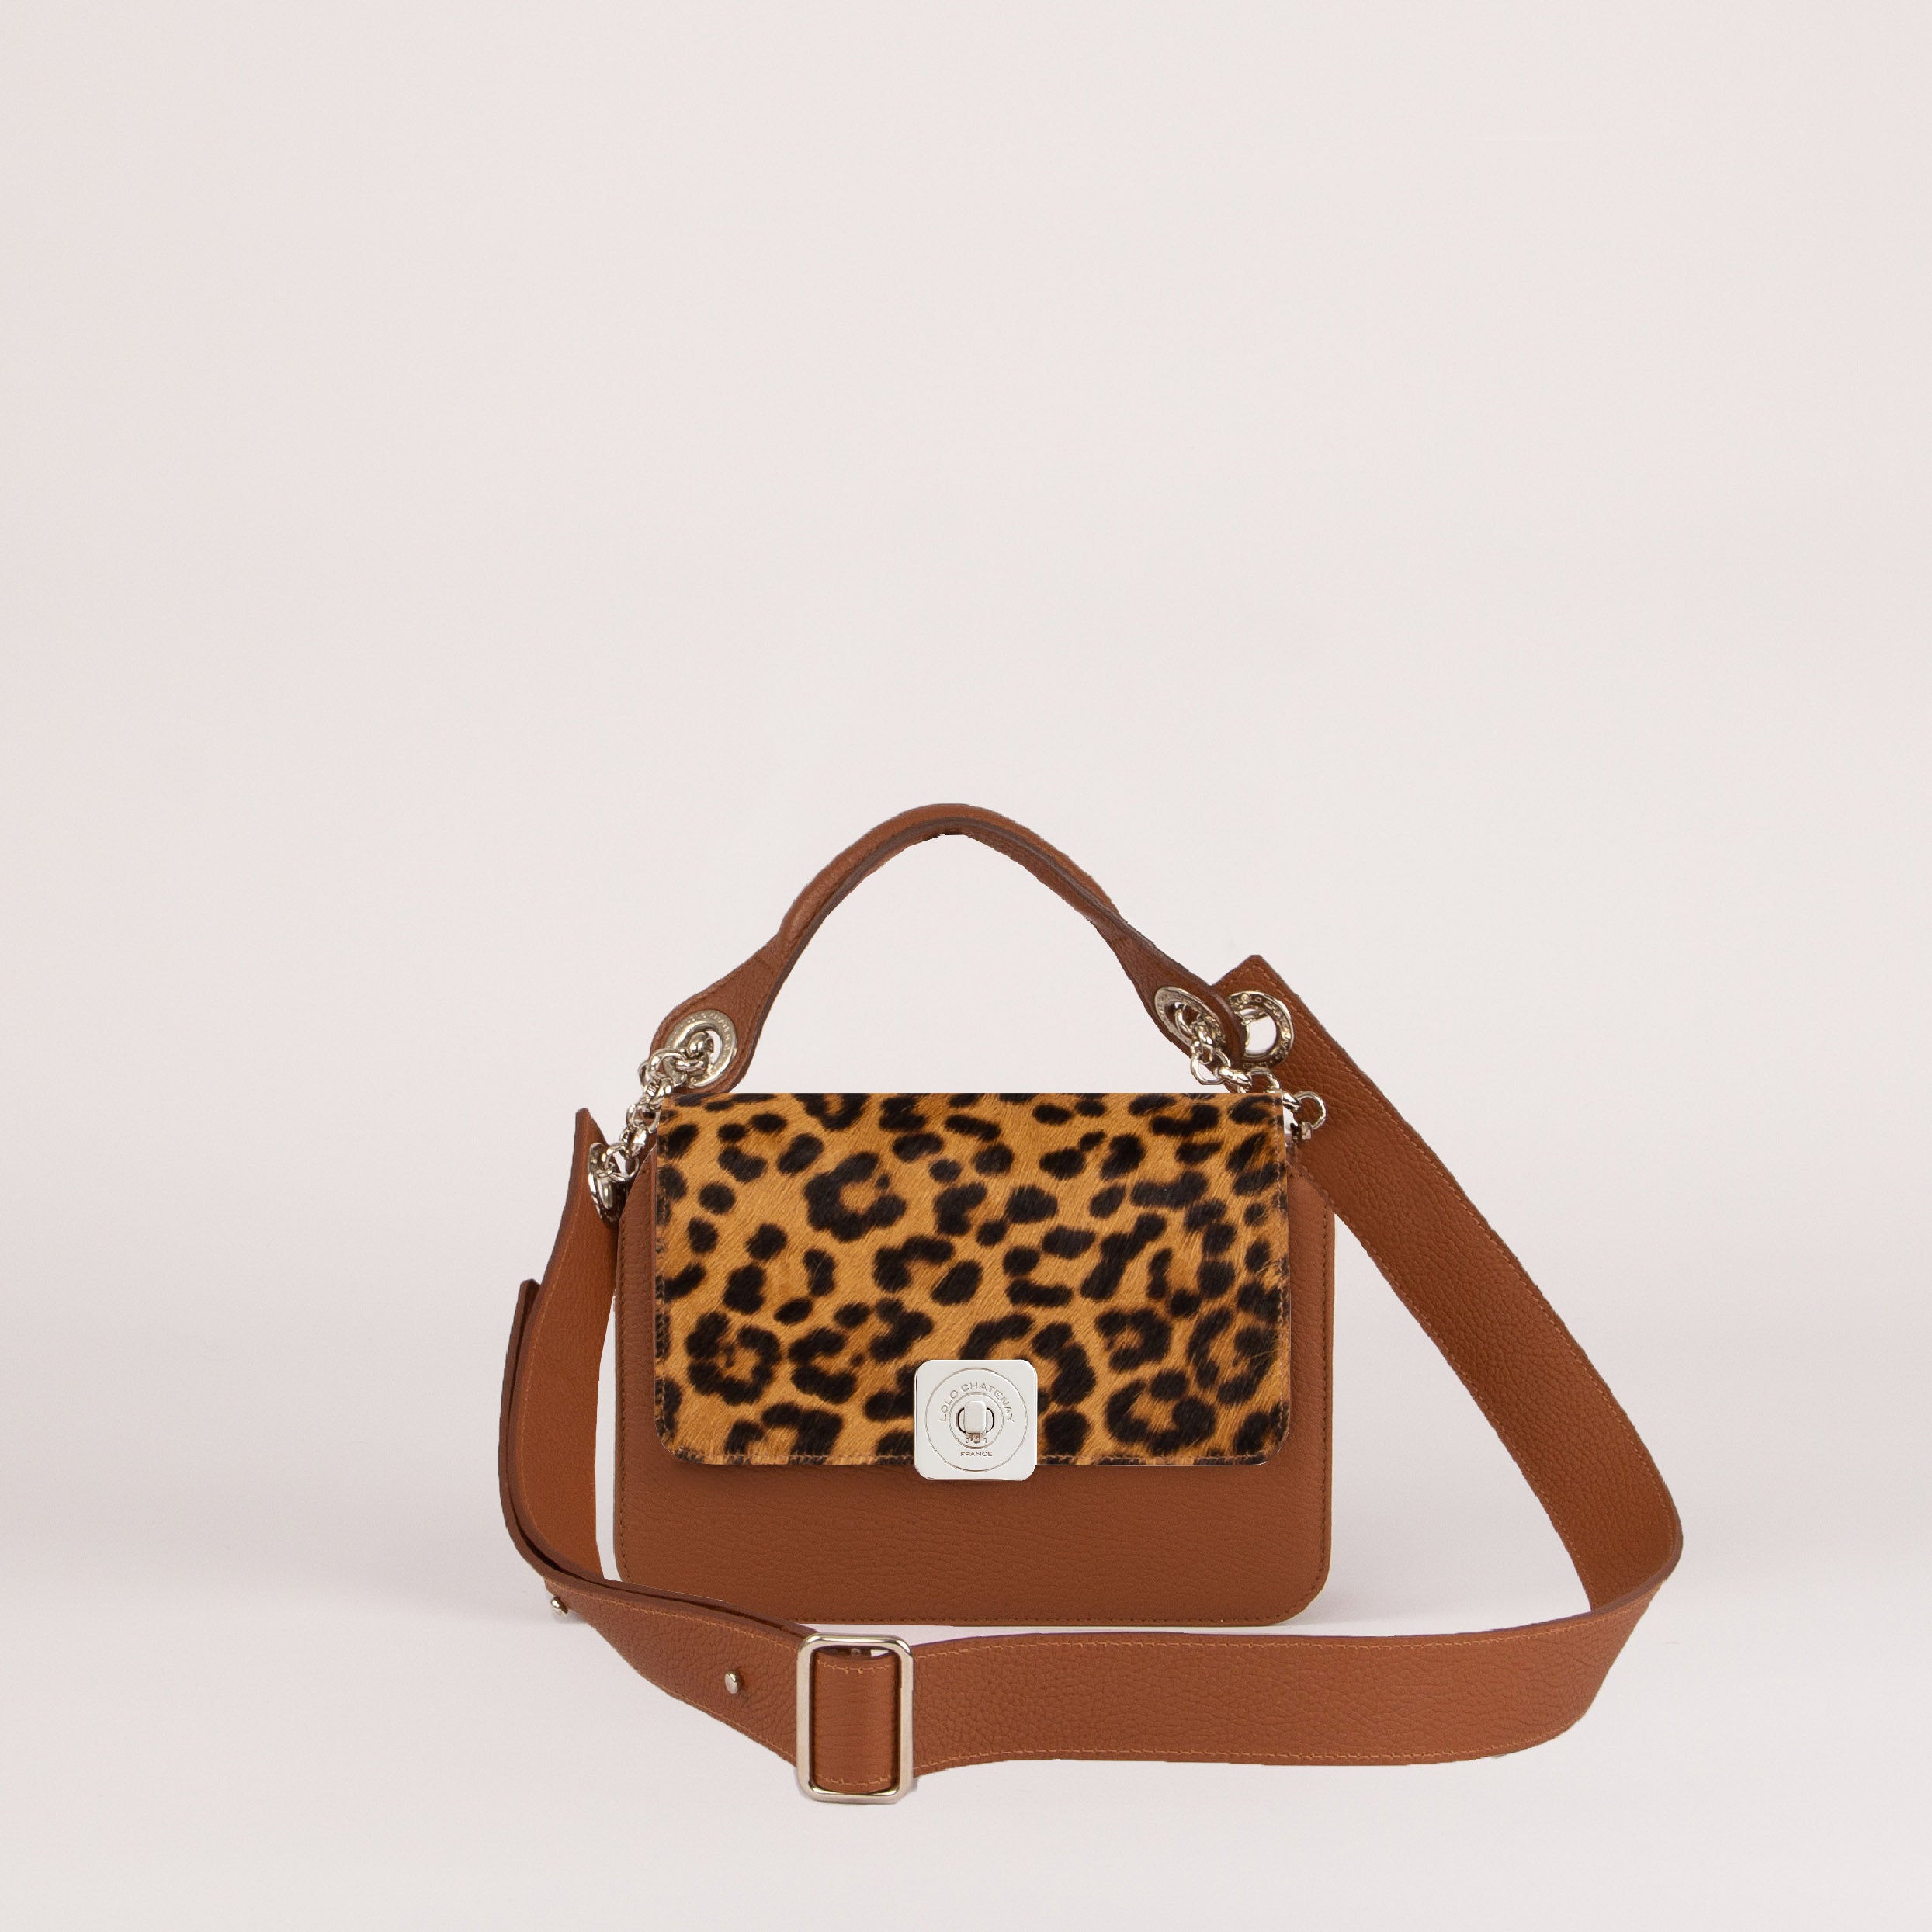 Little Bag - Gus Leopard Flap, Hand Handle and Adjustable Shoulder Strap